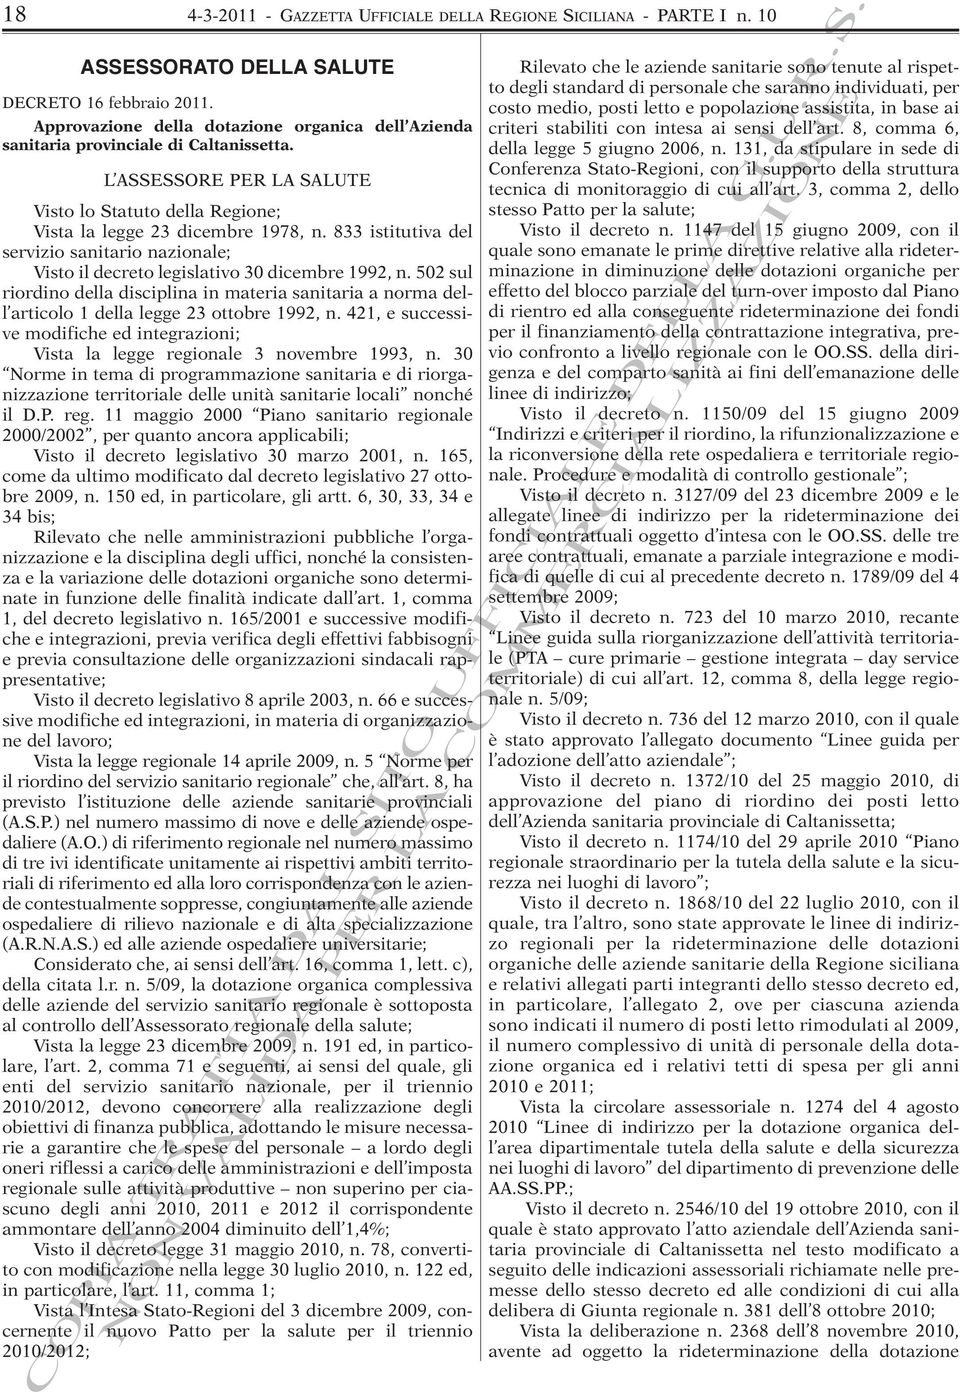 833 istitutiva del servizio sanitario nazionale; Visto il decreto legislativo 30 dicembre 1992, n.